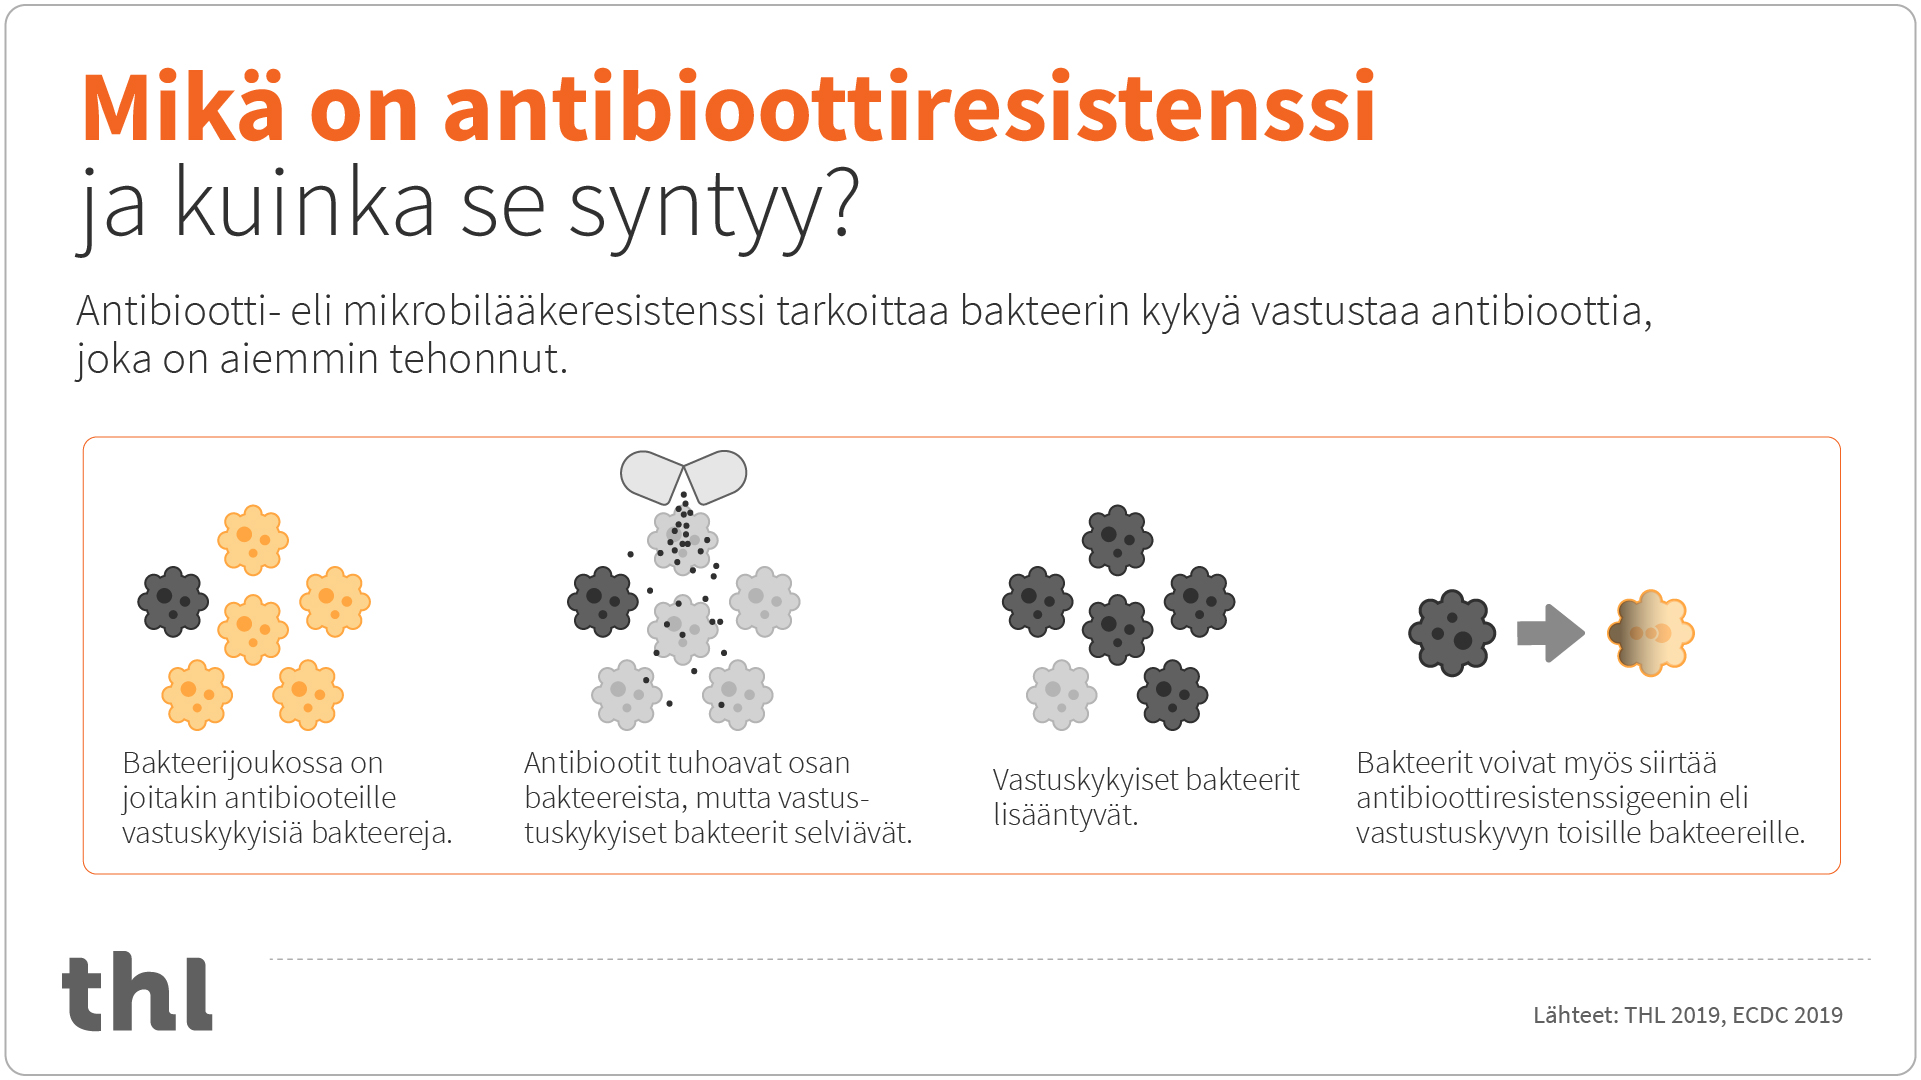 Antibioottiresistenssi tarkoittaa, että bakteeri kykenee vastustamaan antibioottia eli tulee sille resistentiksi. Tästä seuraa, että kyseistä antibioottia ei voi enää käyttää tämän bakteerin aiheuttamien infektioiden hoidossa.